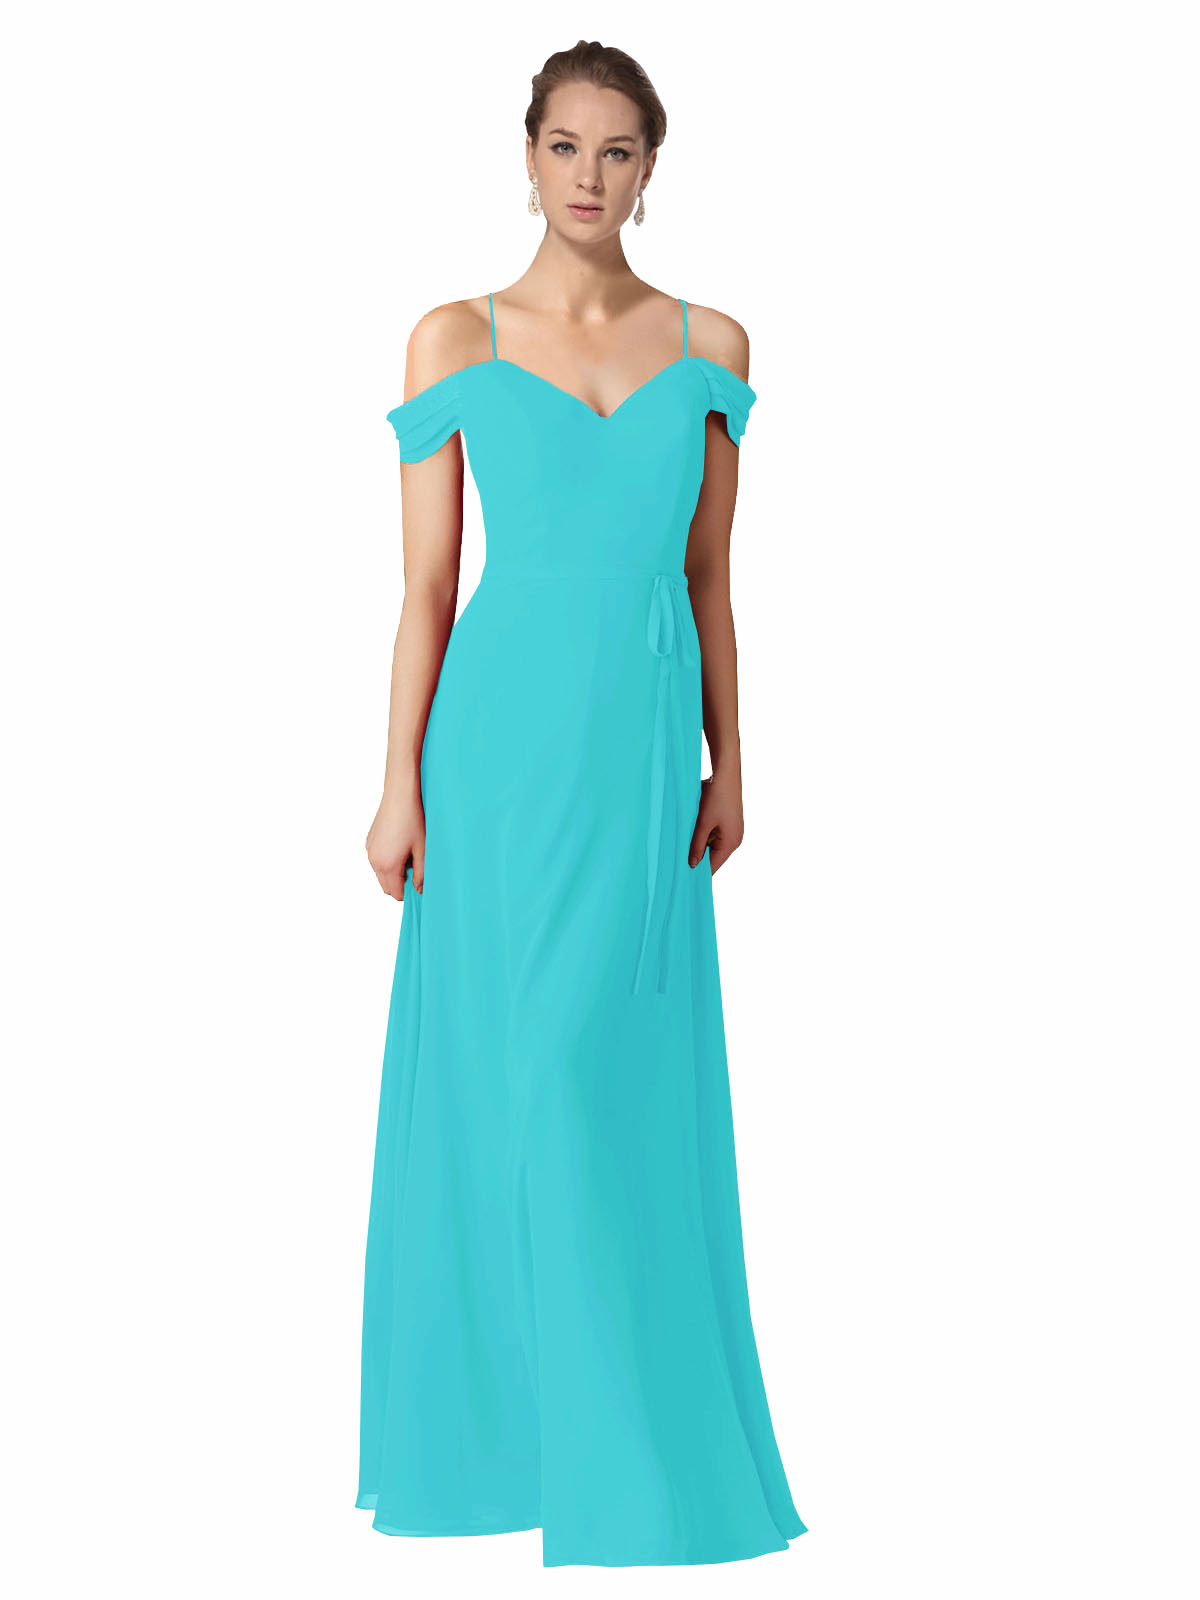 Aqua A-Line Sweetheart Off the Shoulder Long Bridesmaid Dress Alyssa